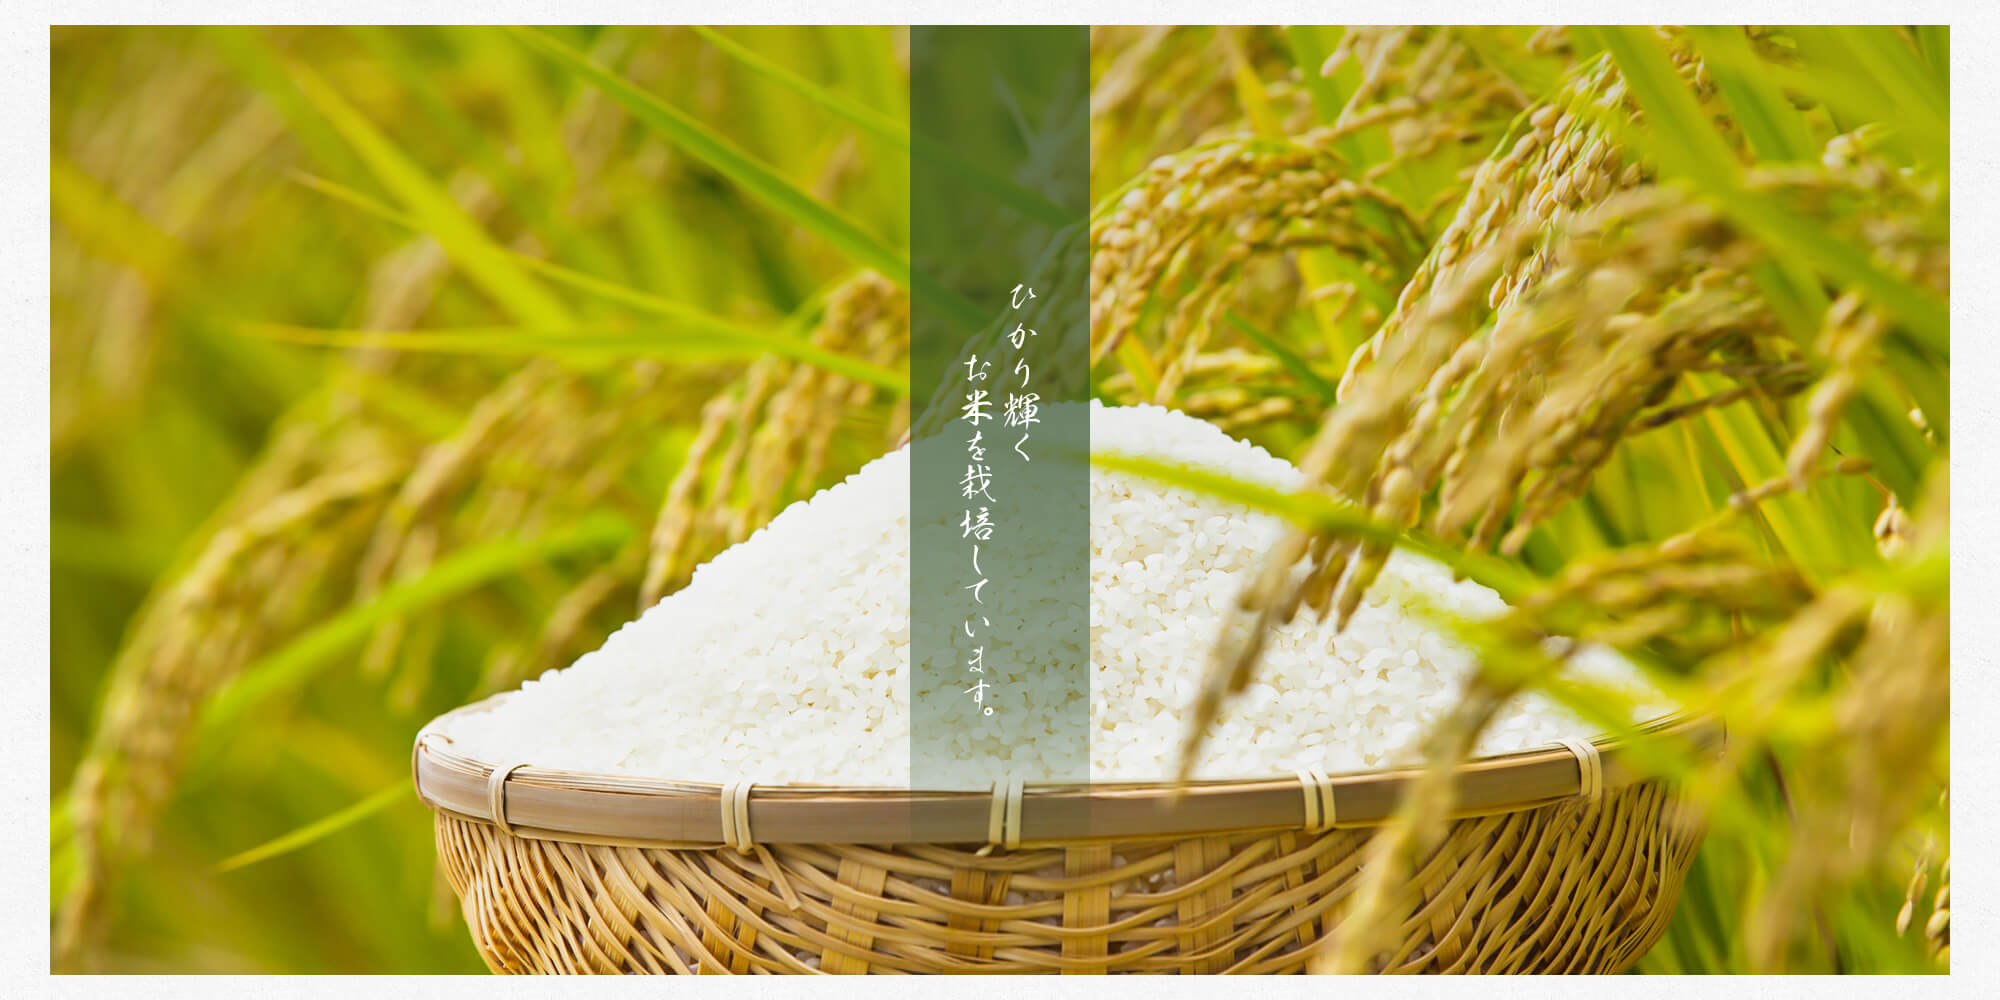 ふわふわとひかり輝くお米を栽培しています。